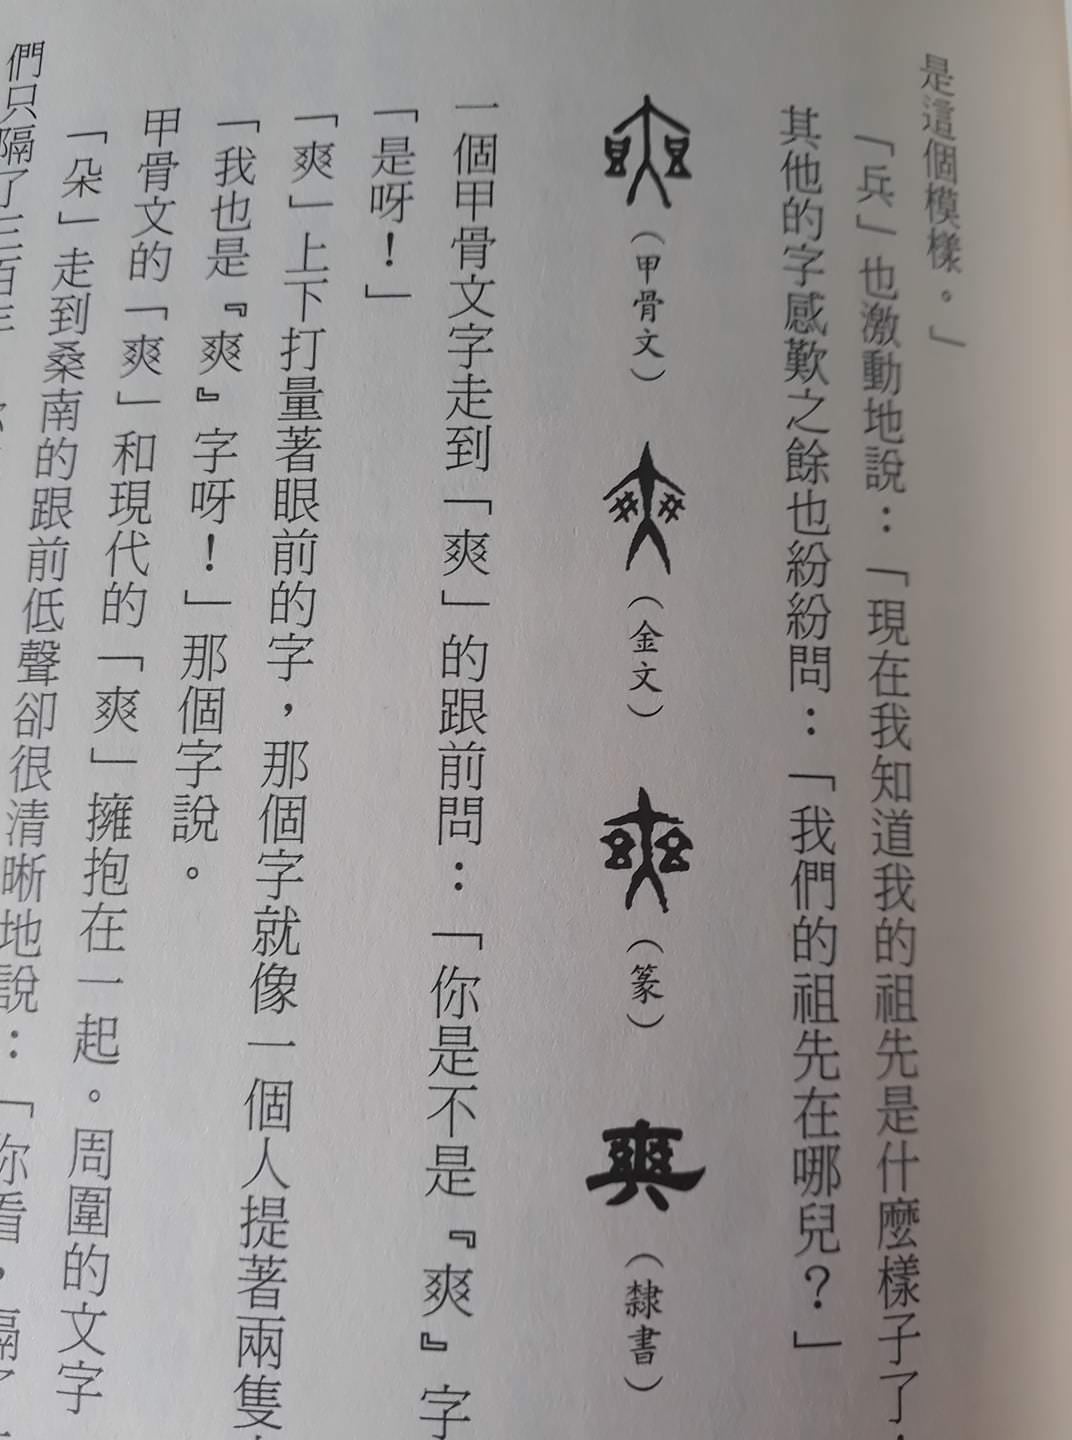 【書評】漢字奇兵~寓教於樂,讓孩子從奇幻的故事場景中,領略中國文字之美